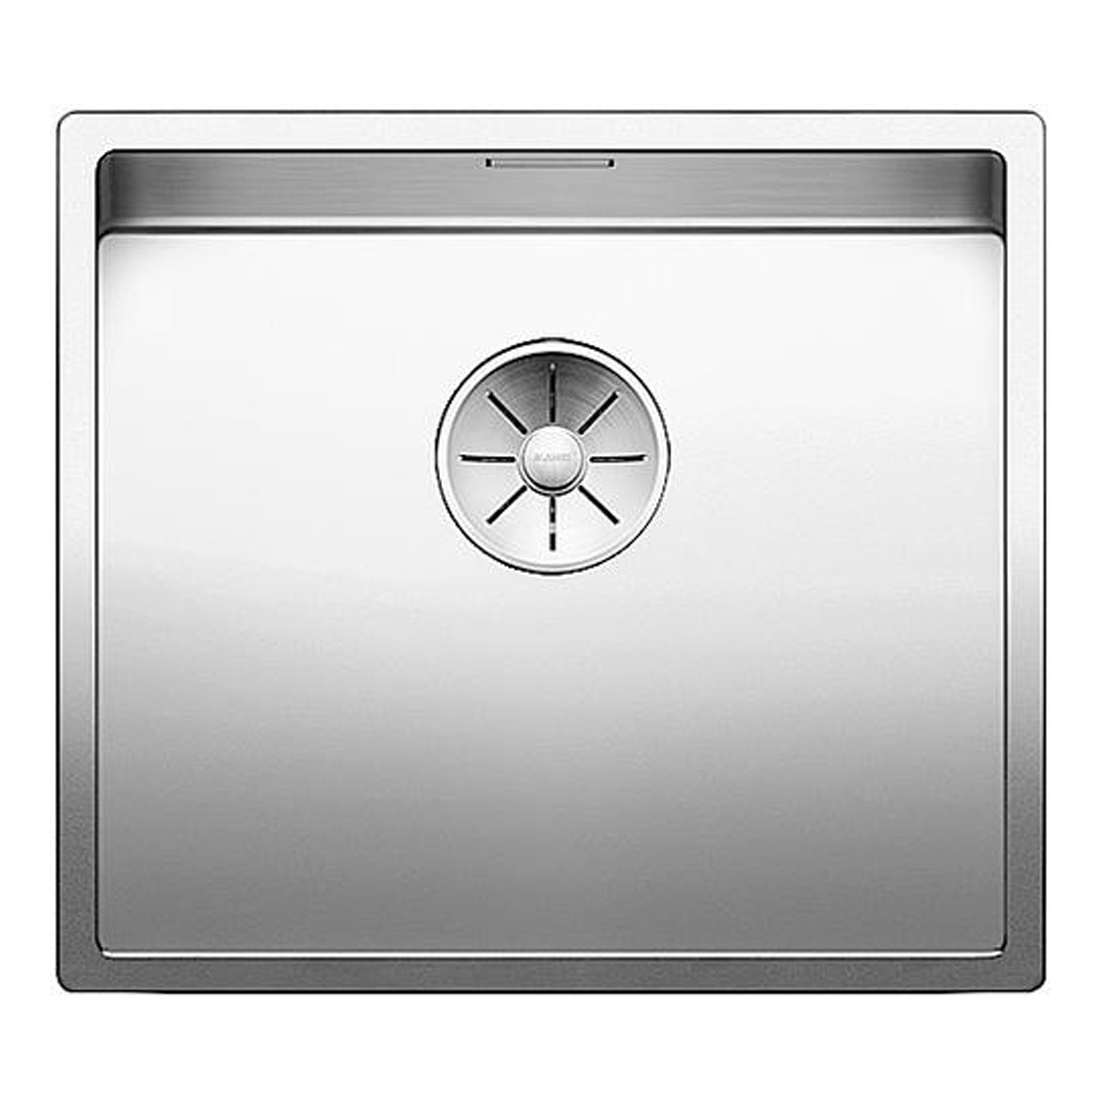 Кухонная мойка Blanco Claron 450-IF зеркальная полировка кухонная мойка blanco claron 400 if зеркальная полировка